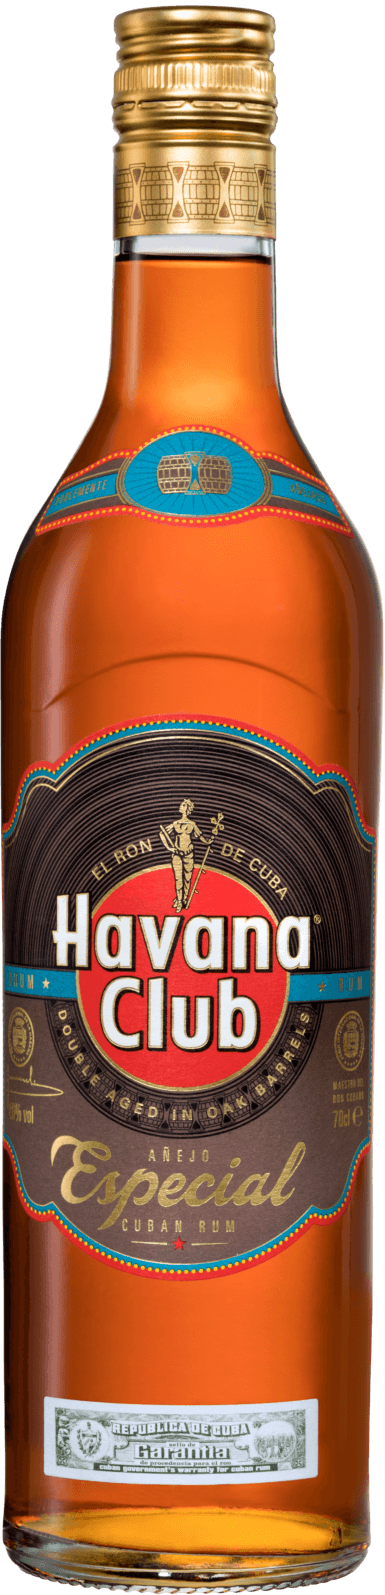 Golden rum Havana Club Especial Havana | Club